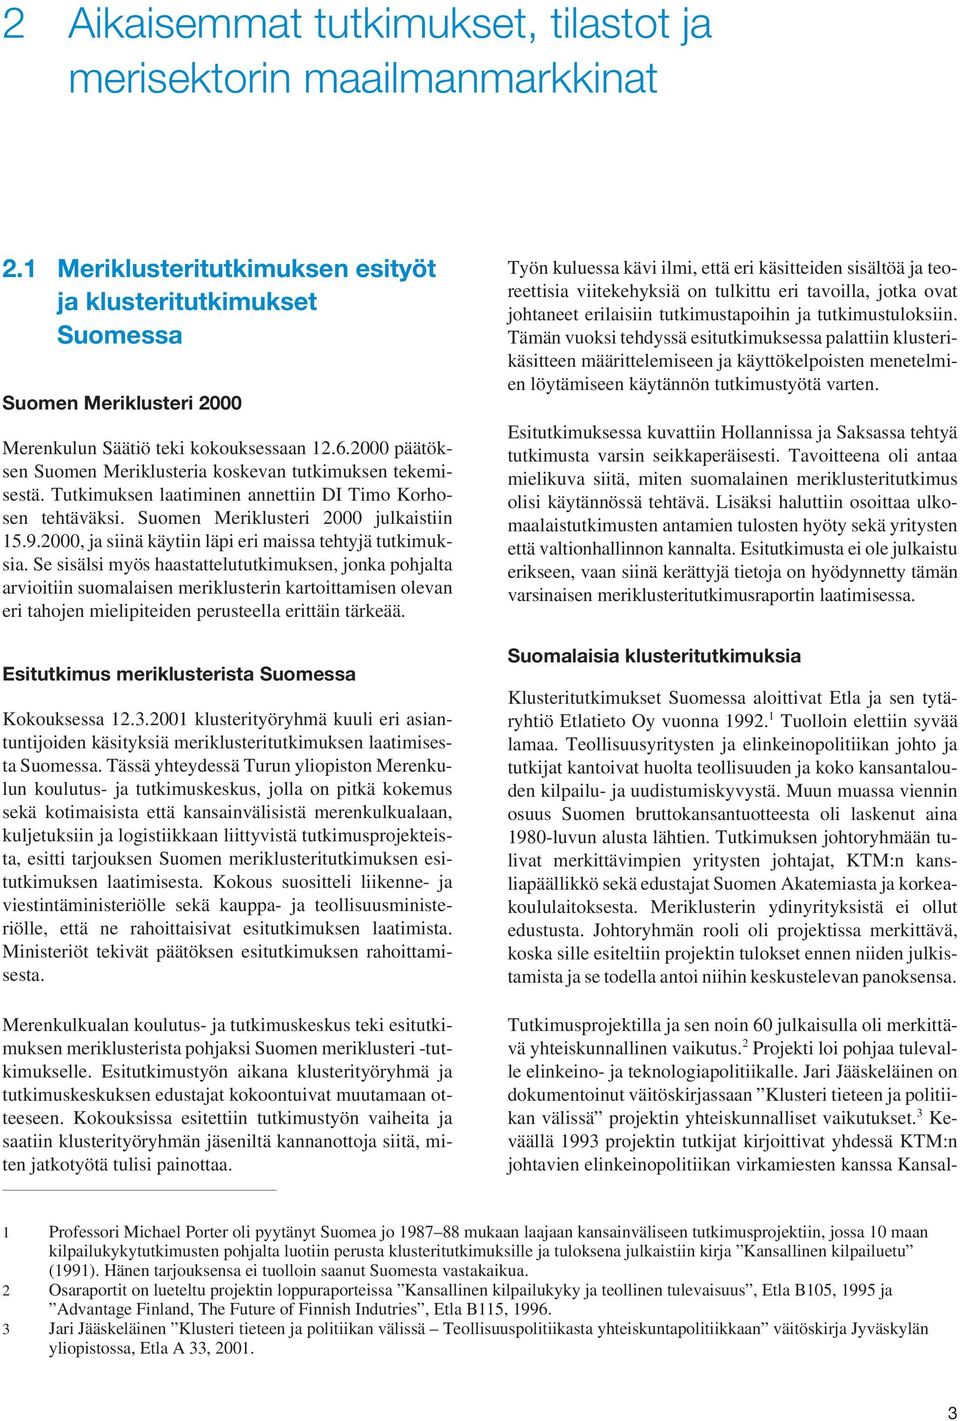 2000 päätöksen Suomen Meriklusteria koskevan tutkimuksen tekemisestä. Tutkimuksen laatiminen annettiin DI Timo Korhosen tehtäväksi. Suomen Meriklusteri 2000 julkaistiin 15.9.